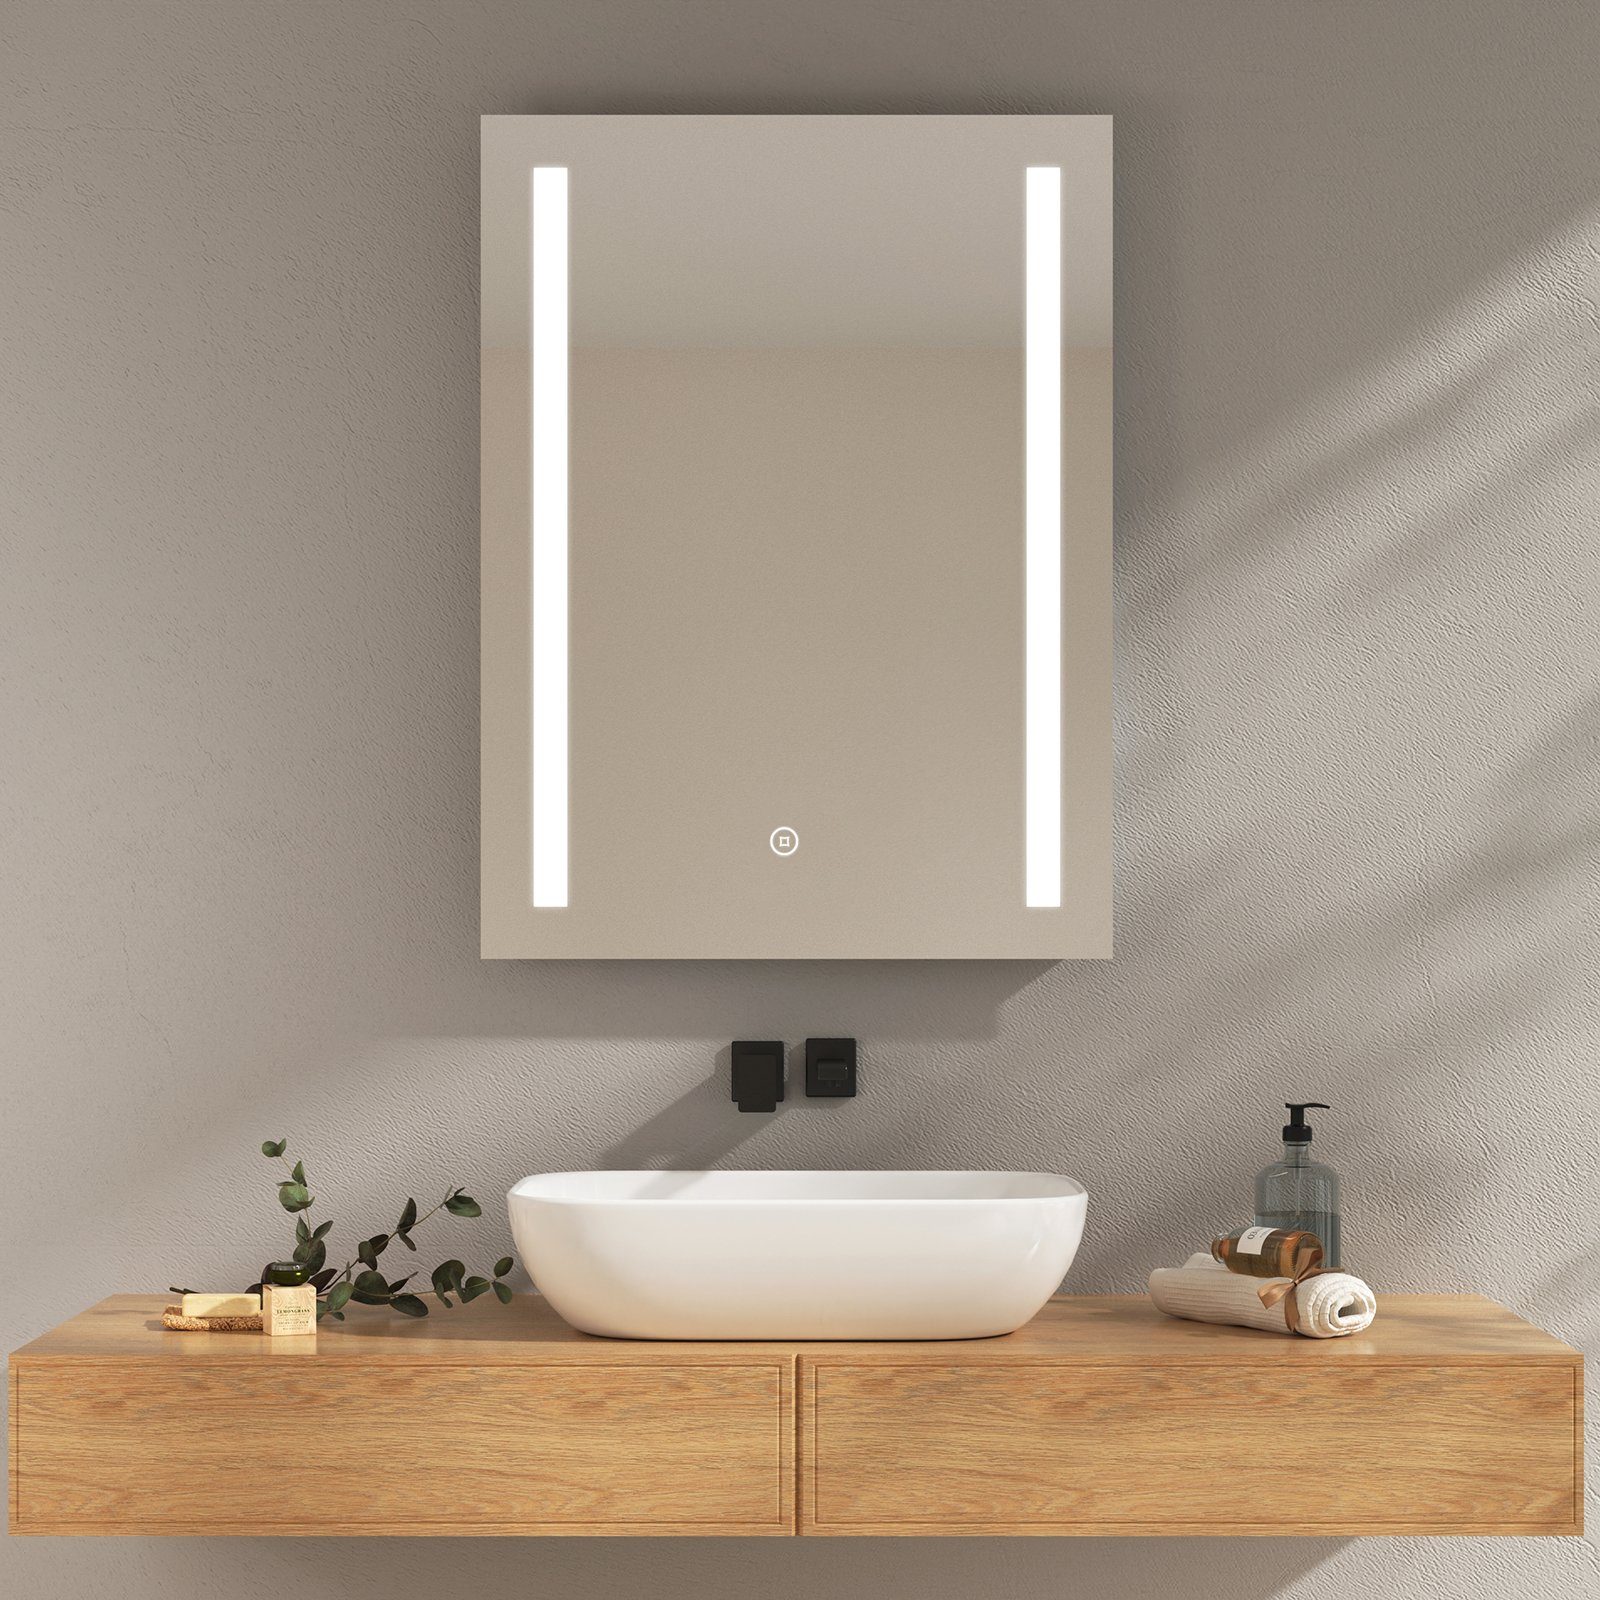 EMKE Badspiegel LED Wandspiegel mit Beleuchtung Modell 01 (Touch-schalter), mit Kaltweiß oder Warmweiß Beleuchtung und Beschlagfrei IP44